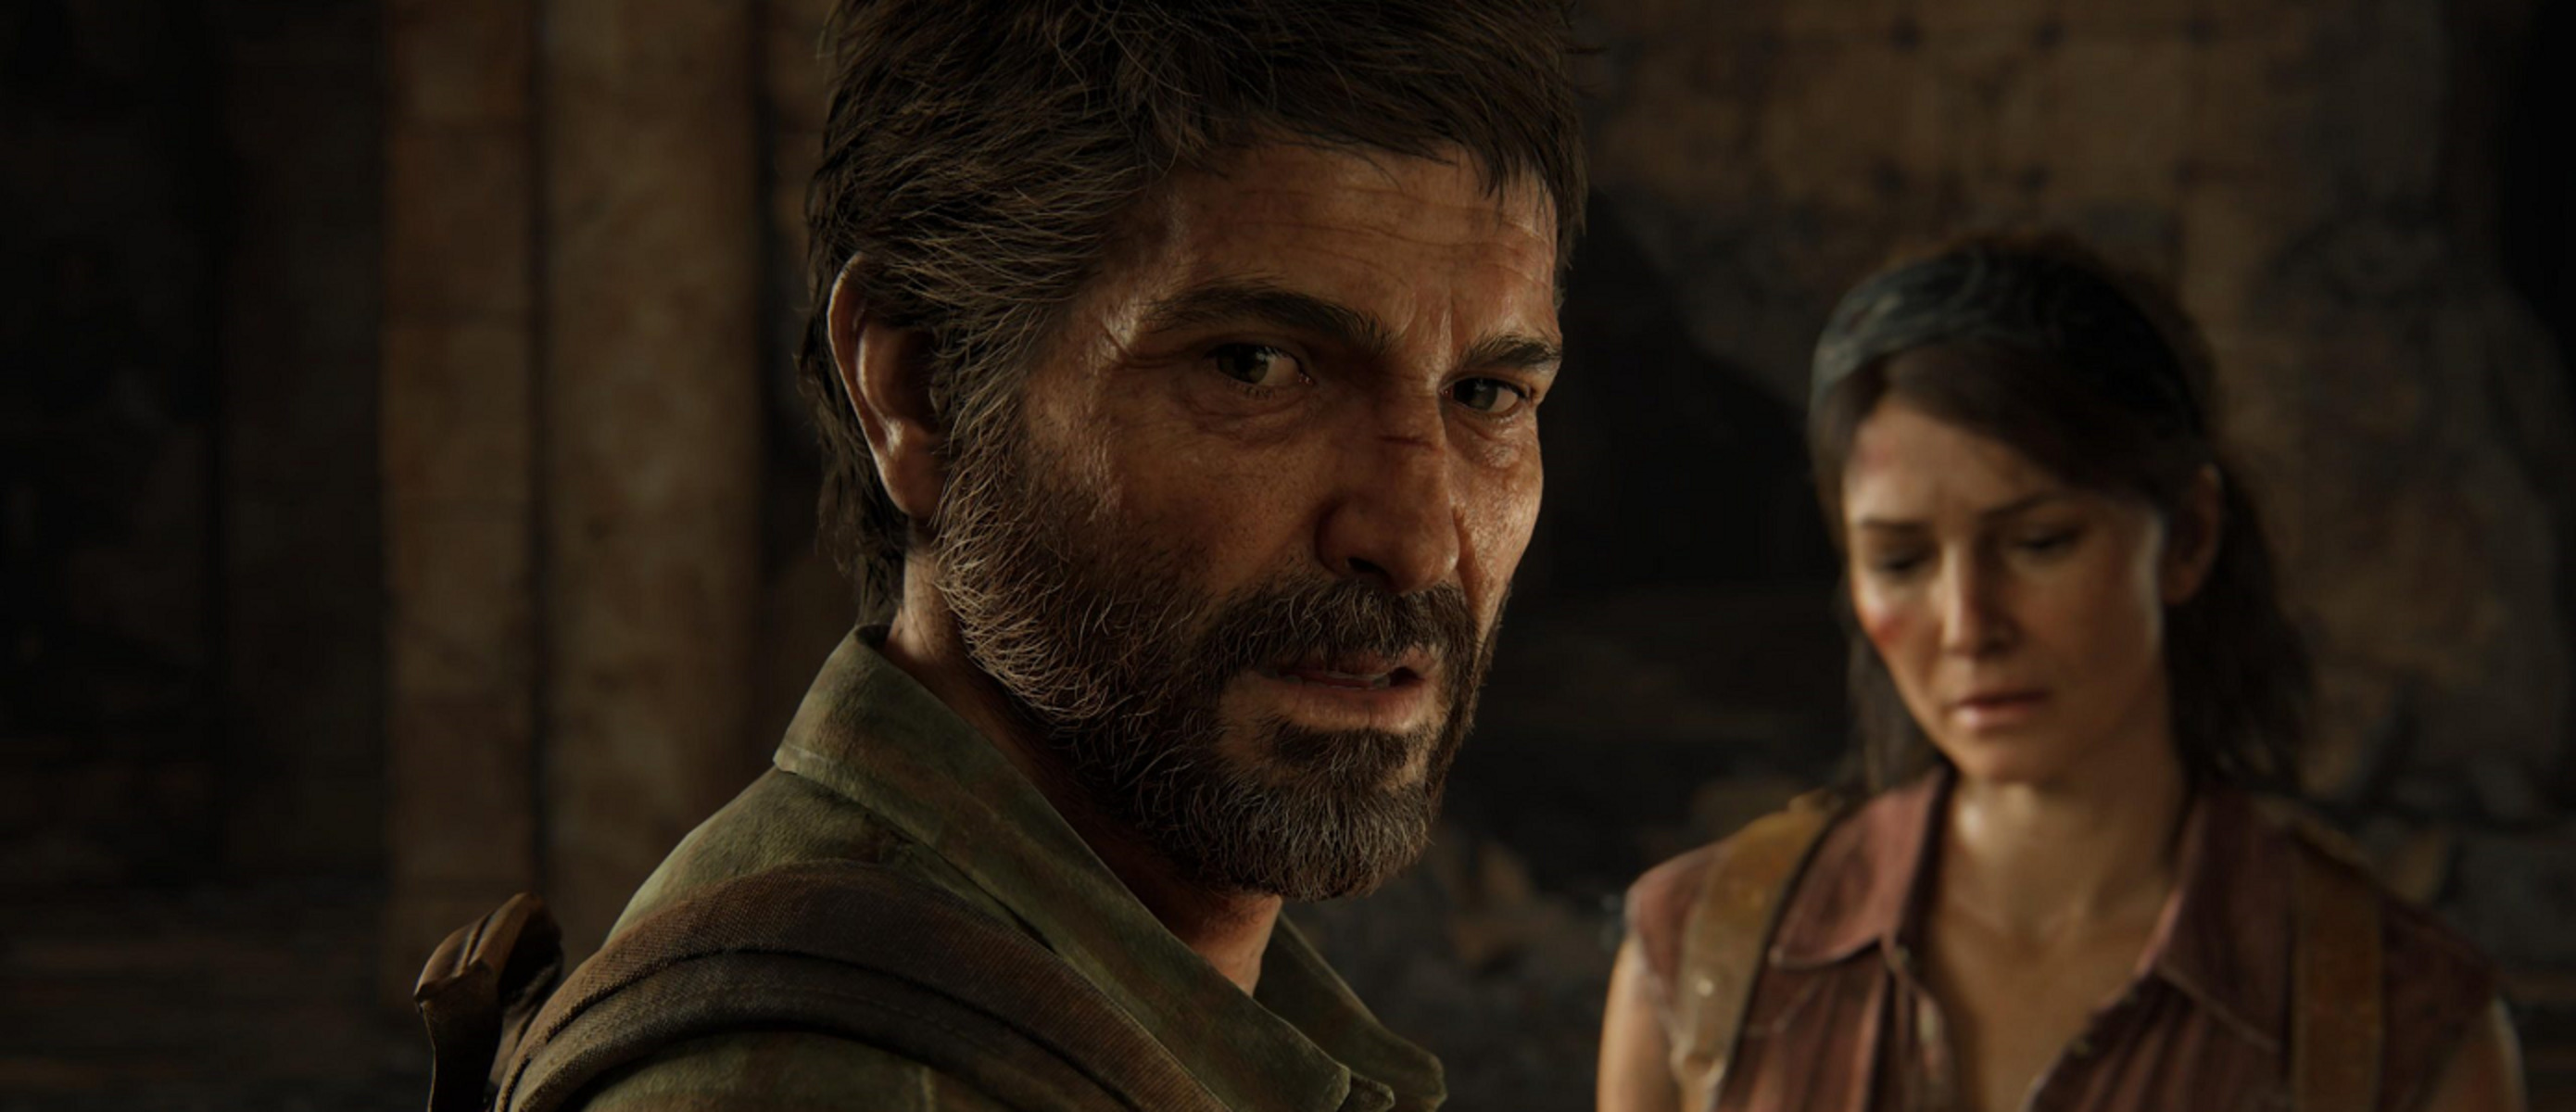 В ремейк The Last of Us для PS5 добавили работающие весы - они показывают в...